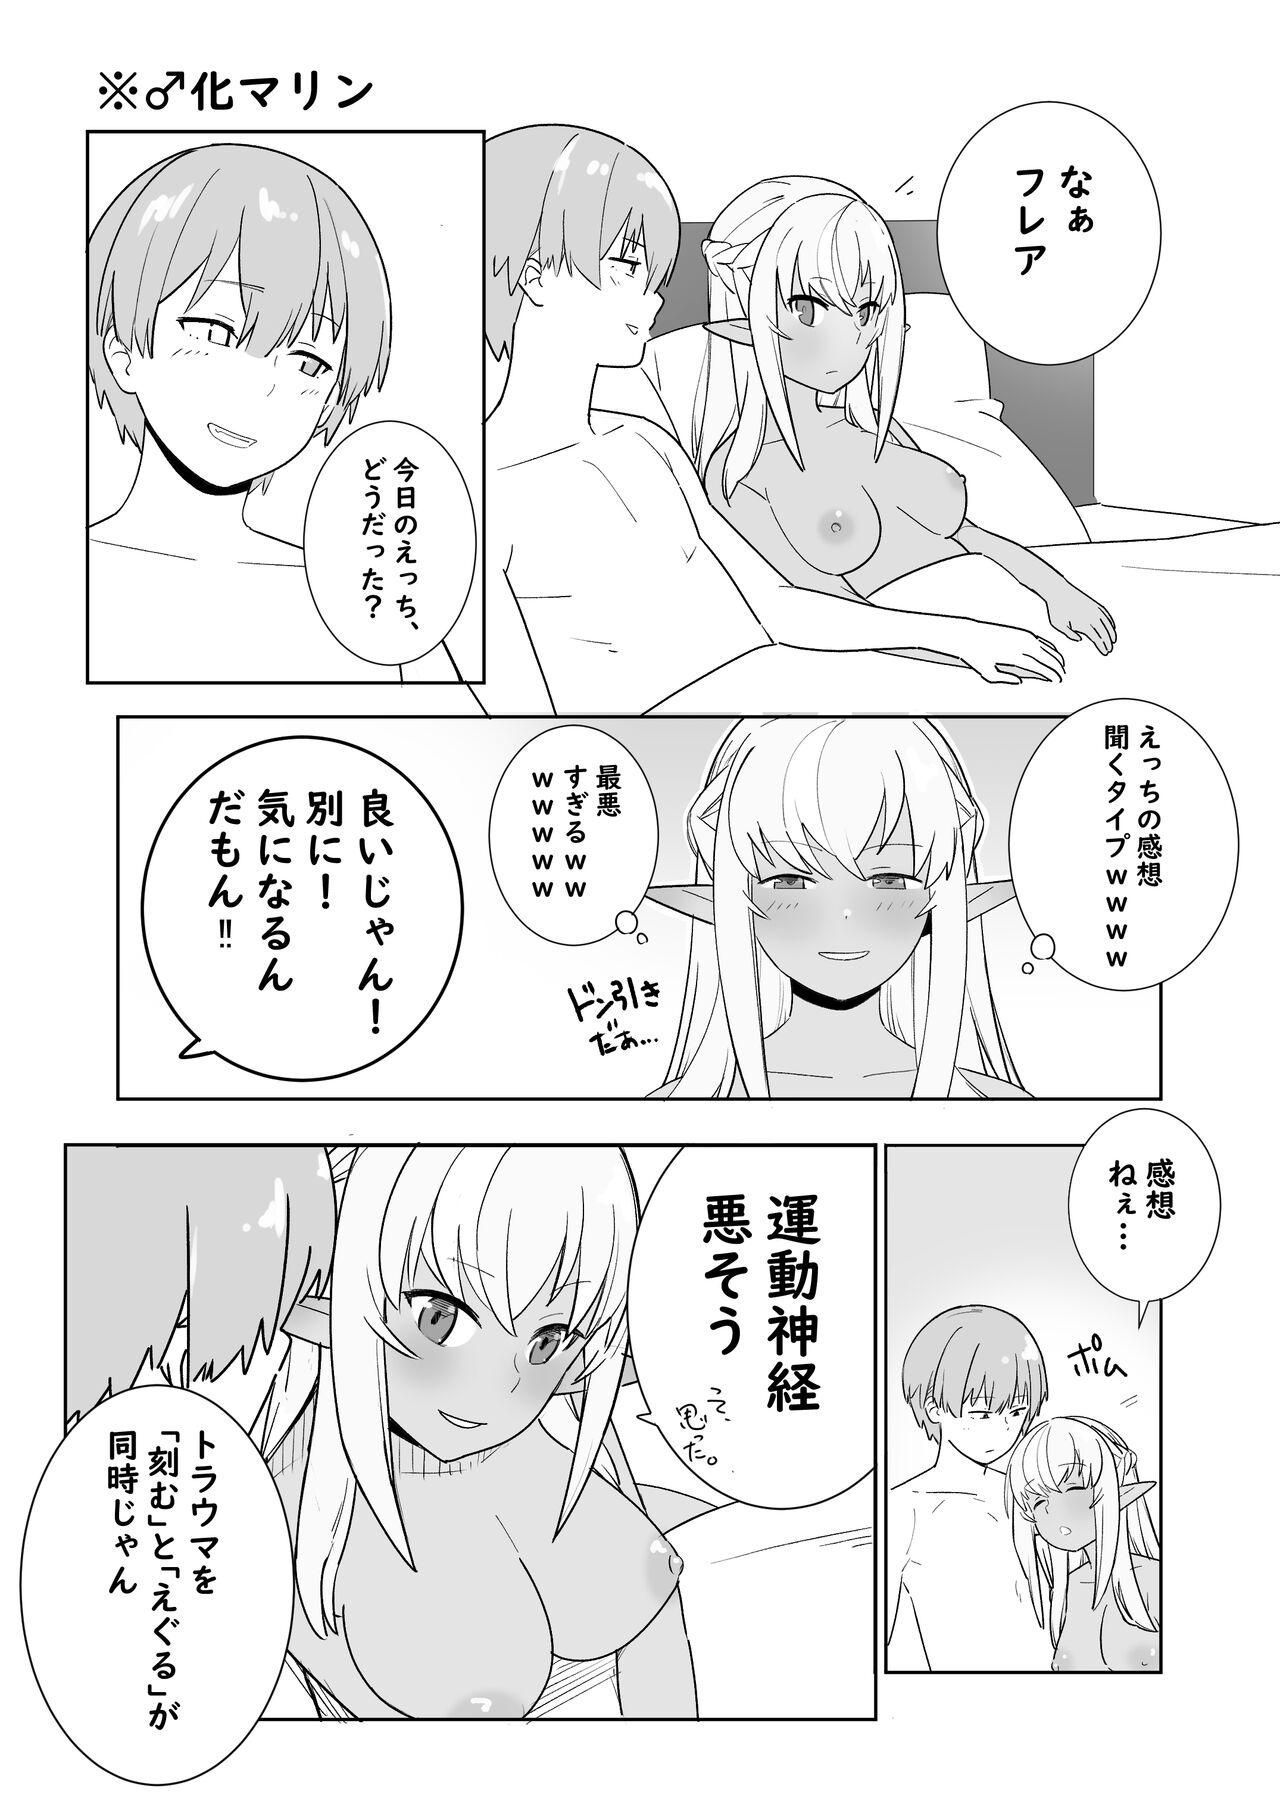 Chichona Twitter Short Manga - Hololive Bear - Page 8